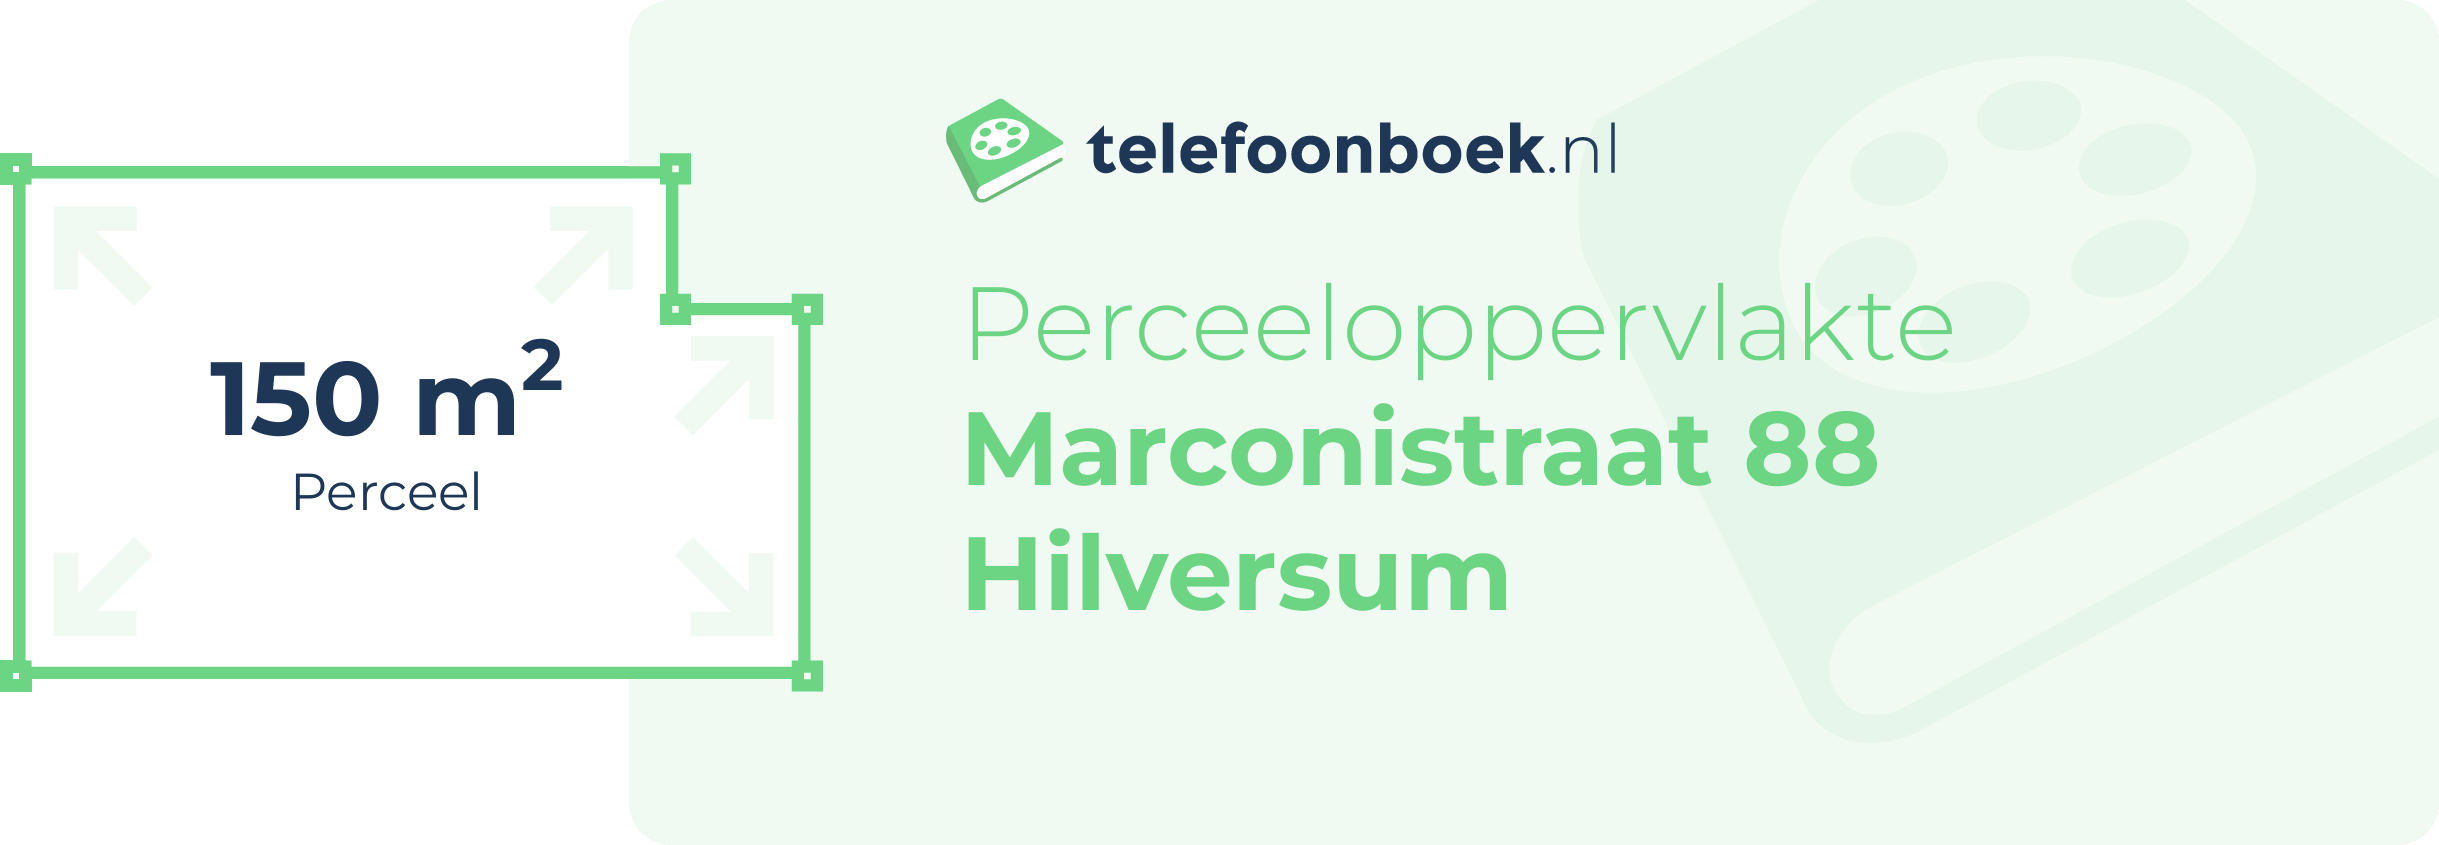 Perceeloppervlakte Marconistraat 88 Hilversum